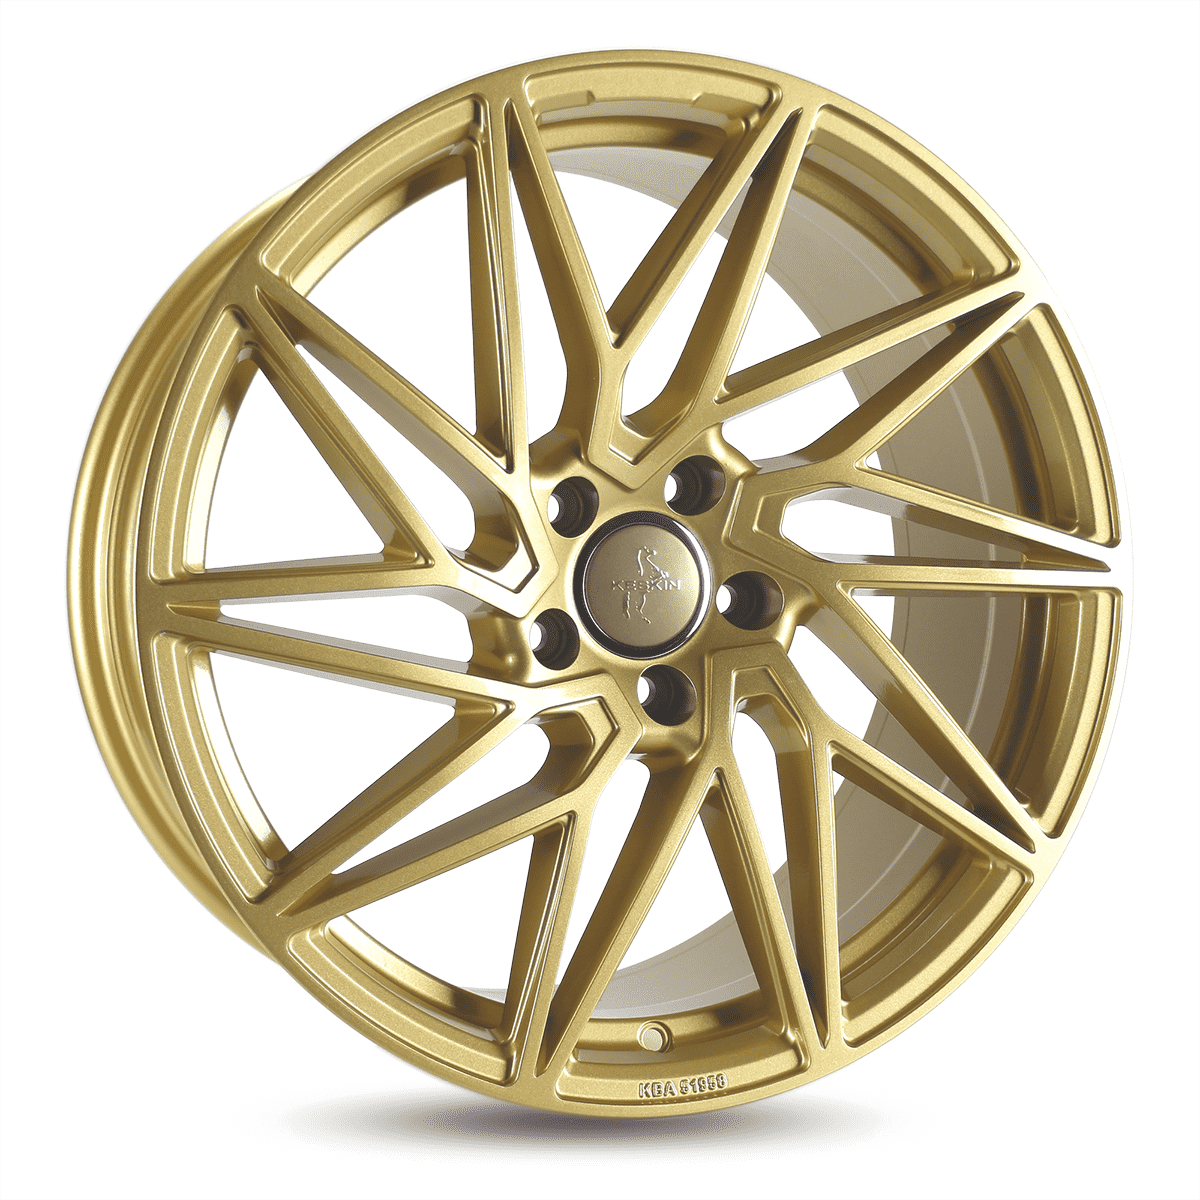 Keskin-KT20-Gold-Gold-19x8.5-72.6-wheels-rims-felger-Felghuset